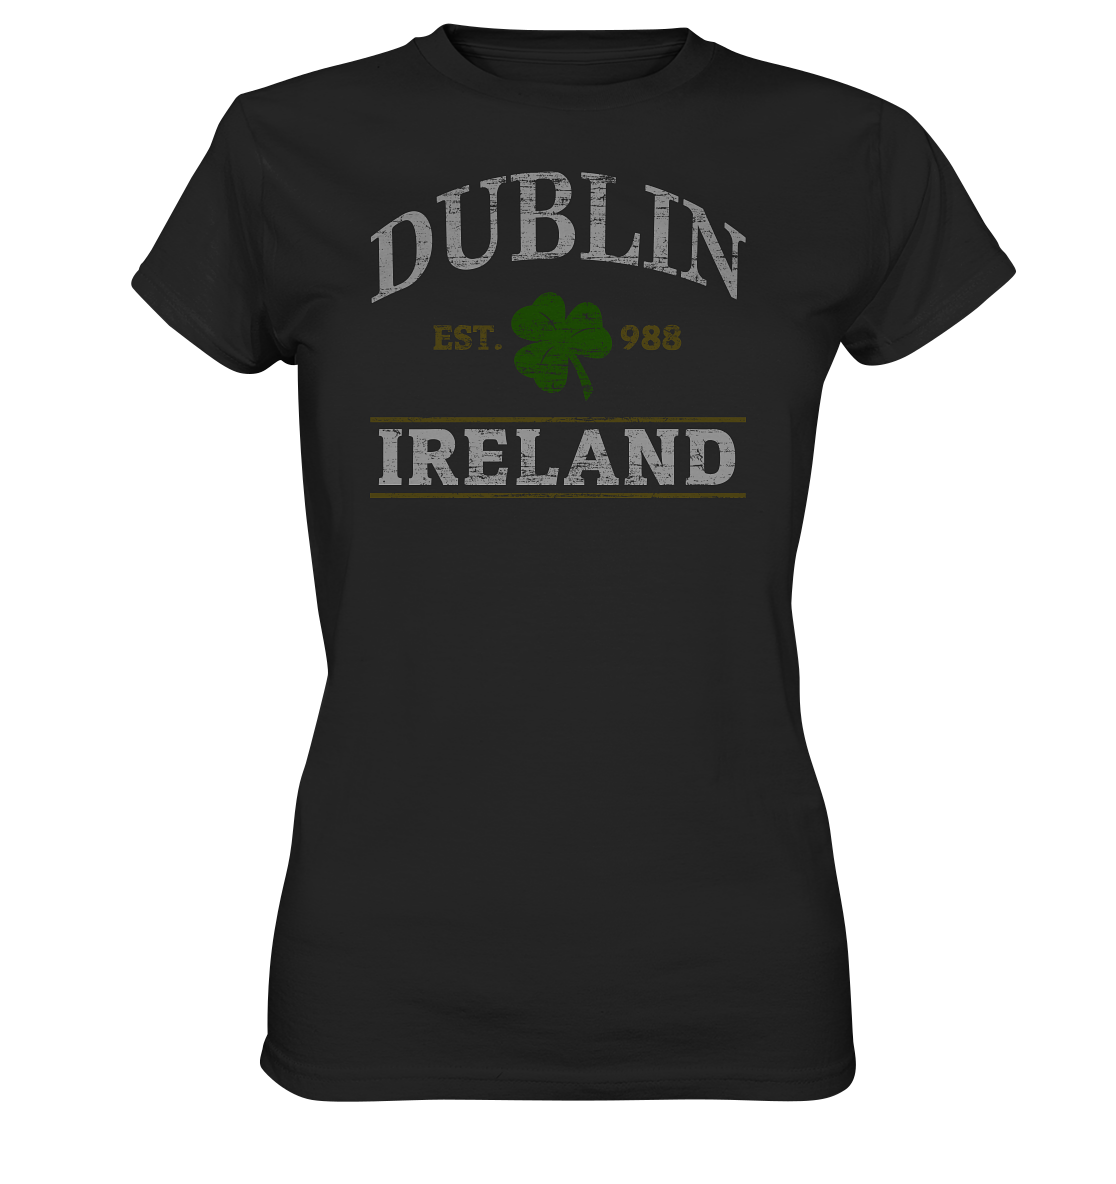 Dublin - Ireland "Est. 988" - Ladies Premium Shirt